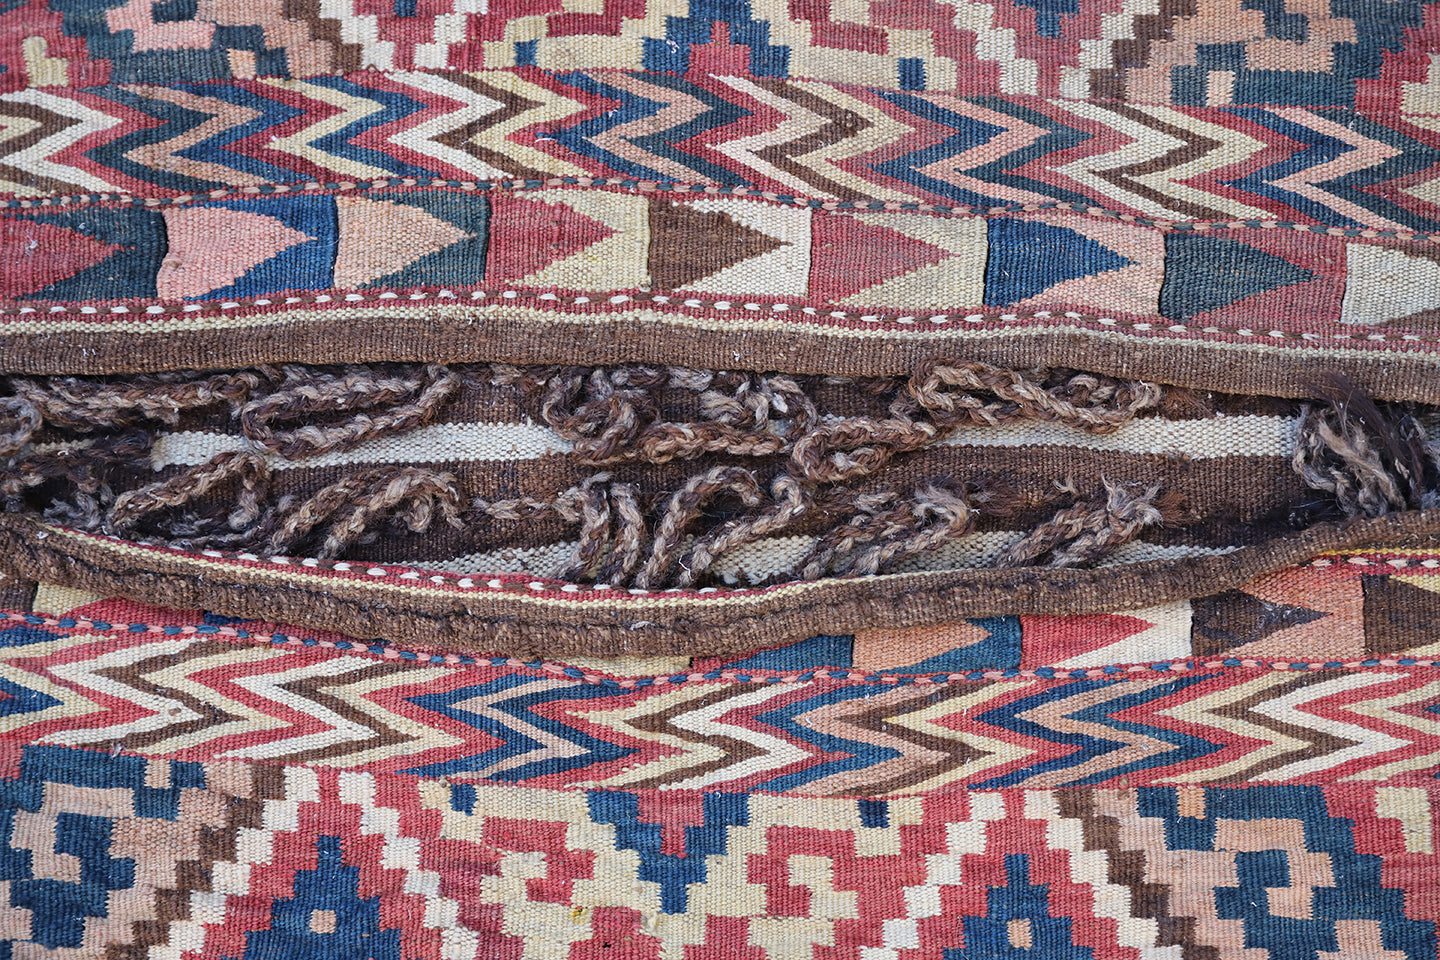 Vintage Uzbek Tartari Kilim Khorjin Saddlebag